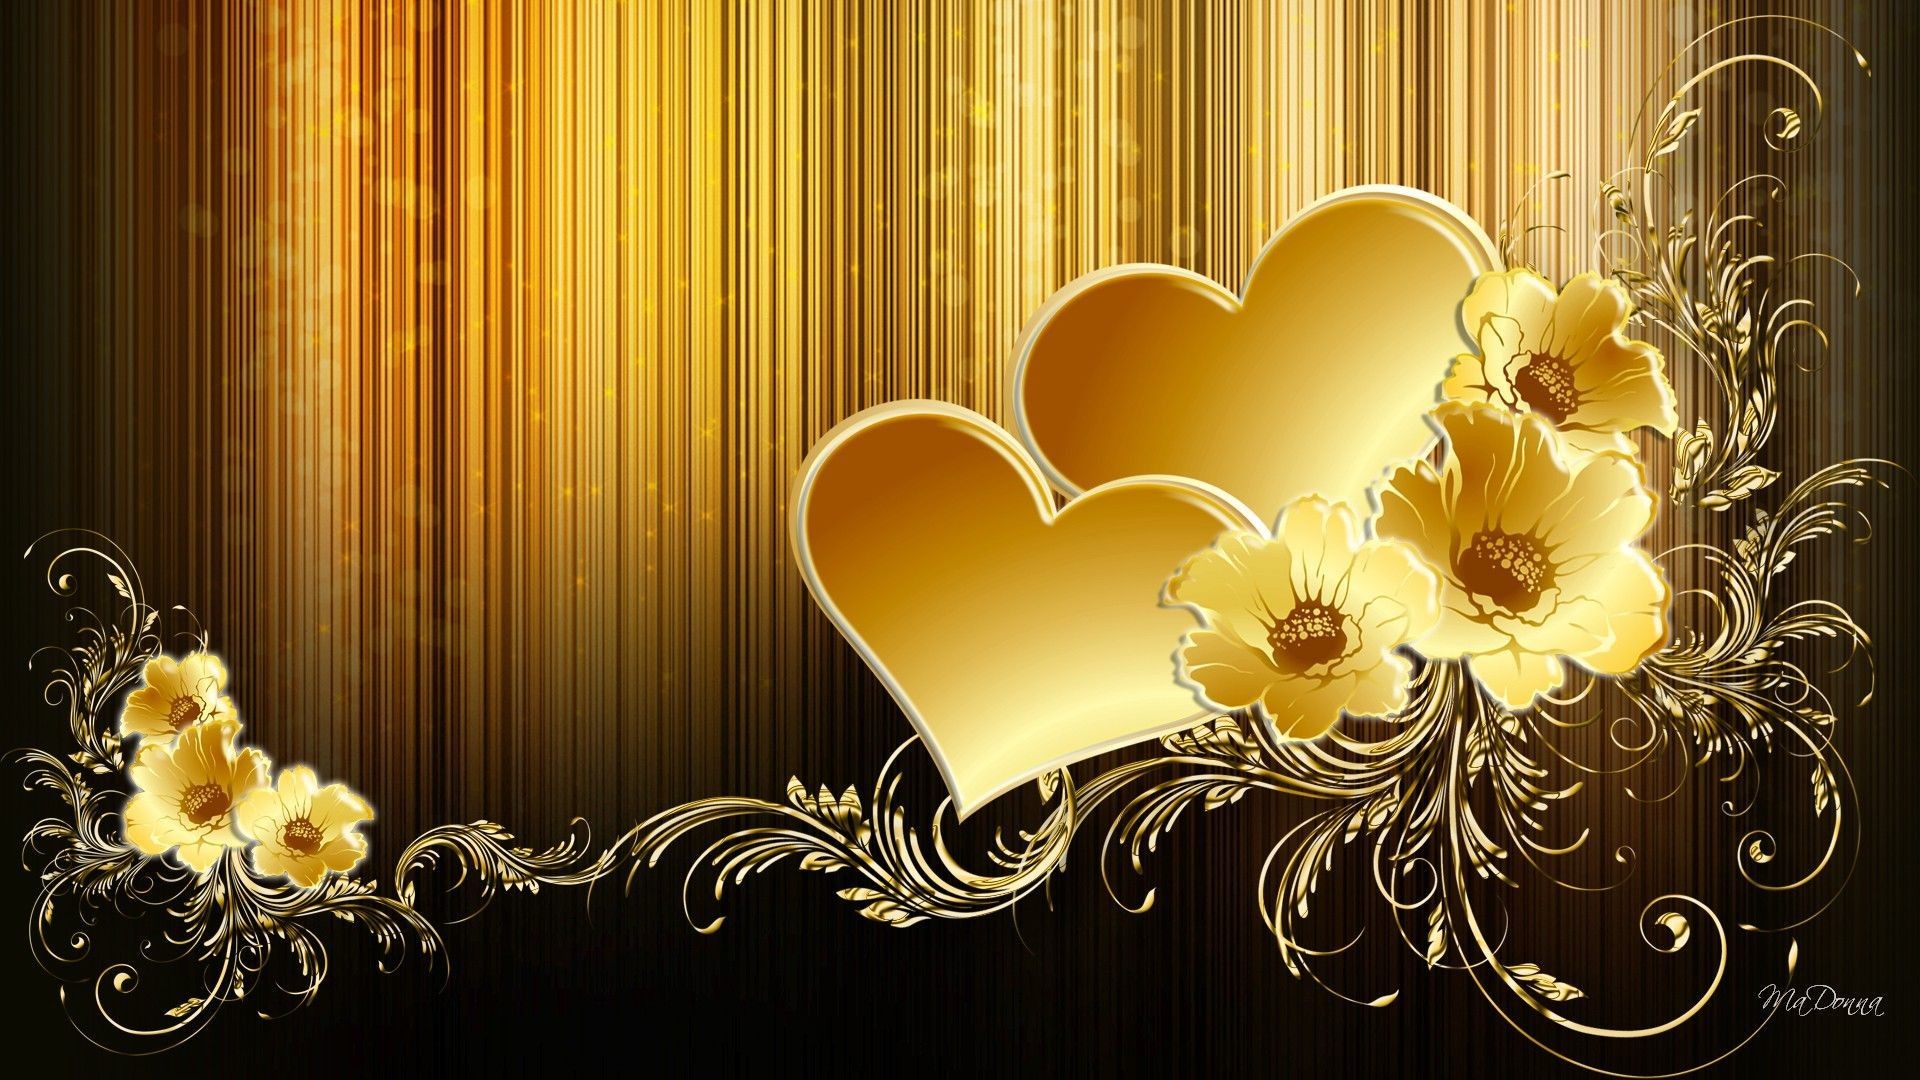 Black And Gold Wallpaper - Golden Heart Wallpaper Hd - 1920x1080 Wallpaper  